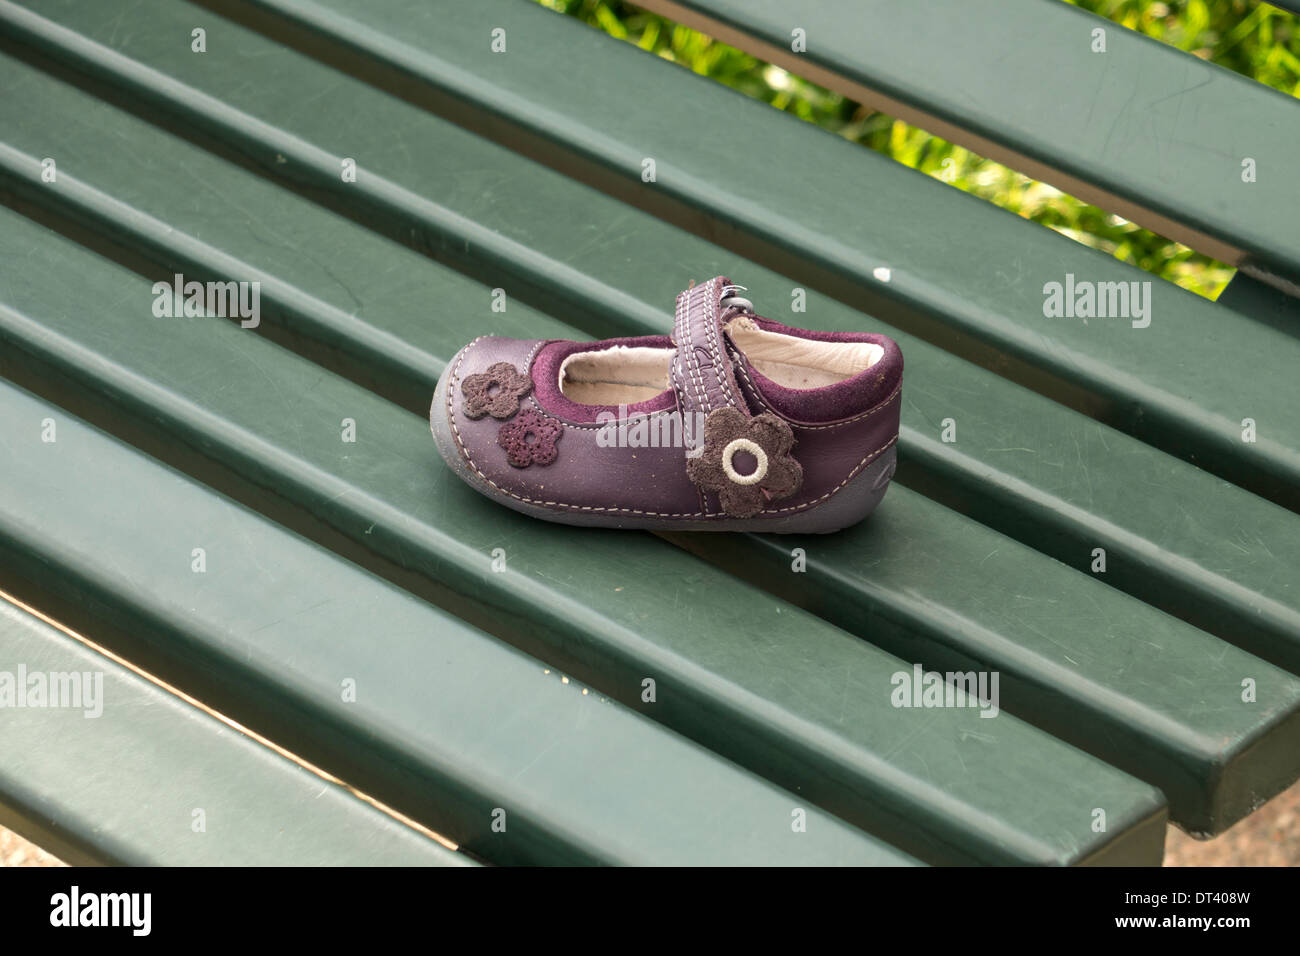 Ein kleines Mädchen Schuh verloren oder aufgegeben, platziert auf einer Bank für den Fall, dass der Eigentümer kommt es zu suchen Stockfoto